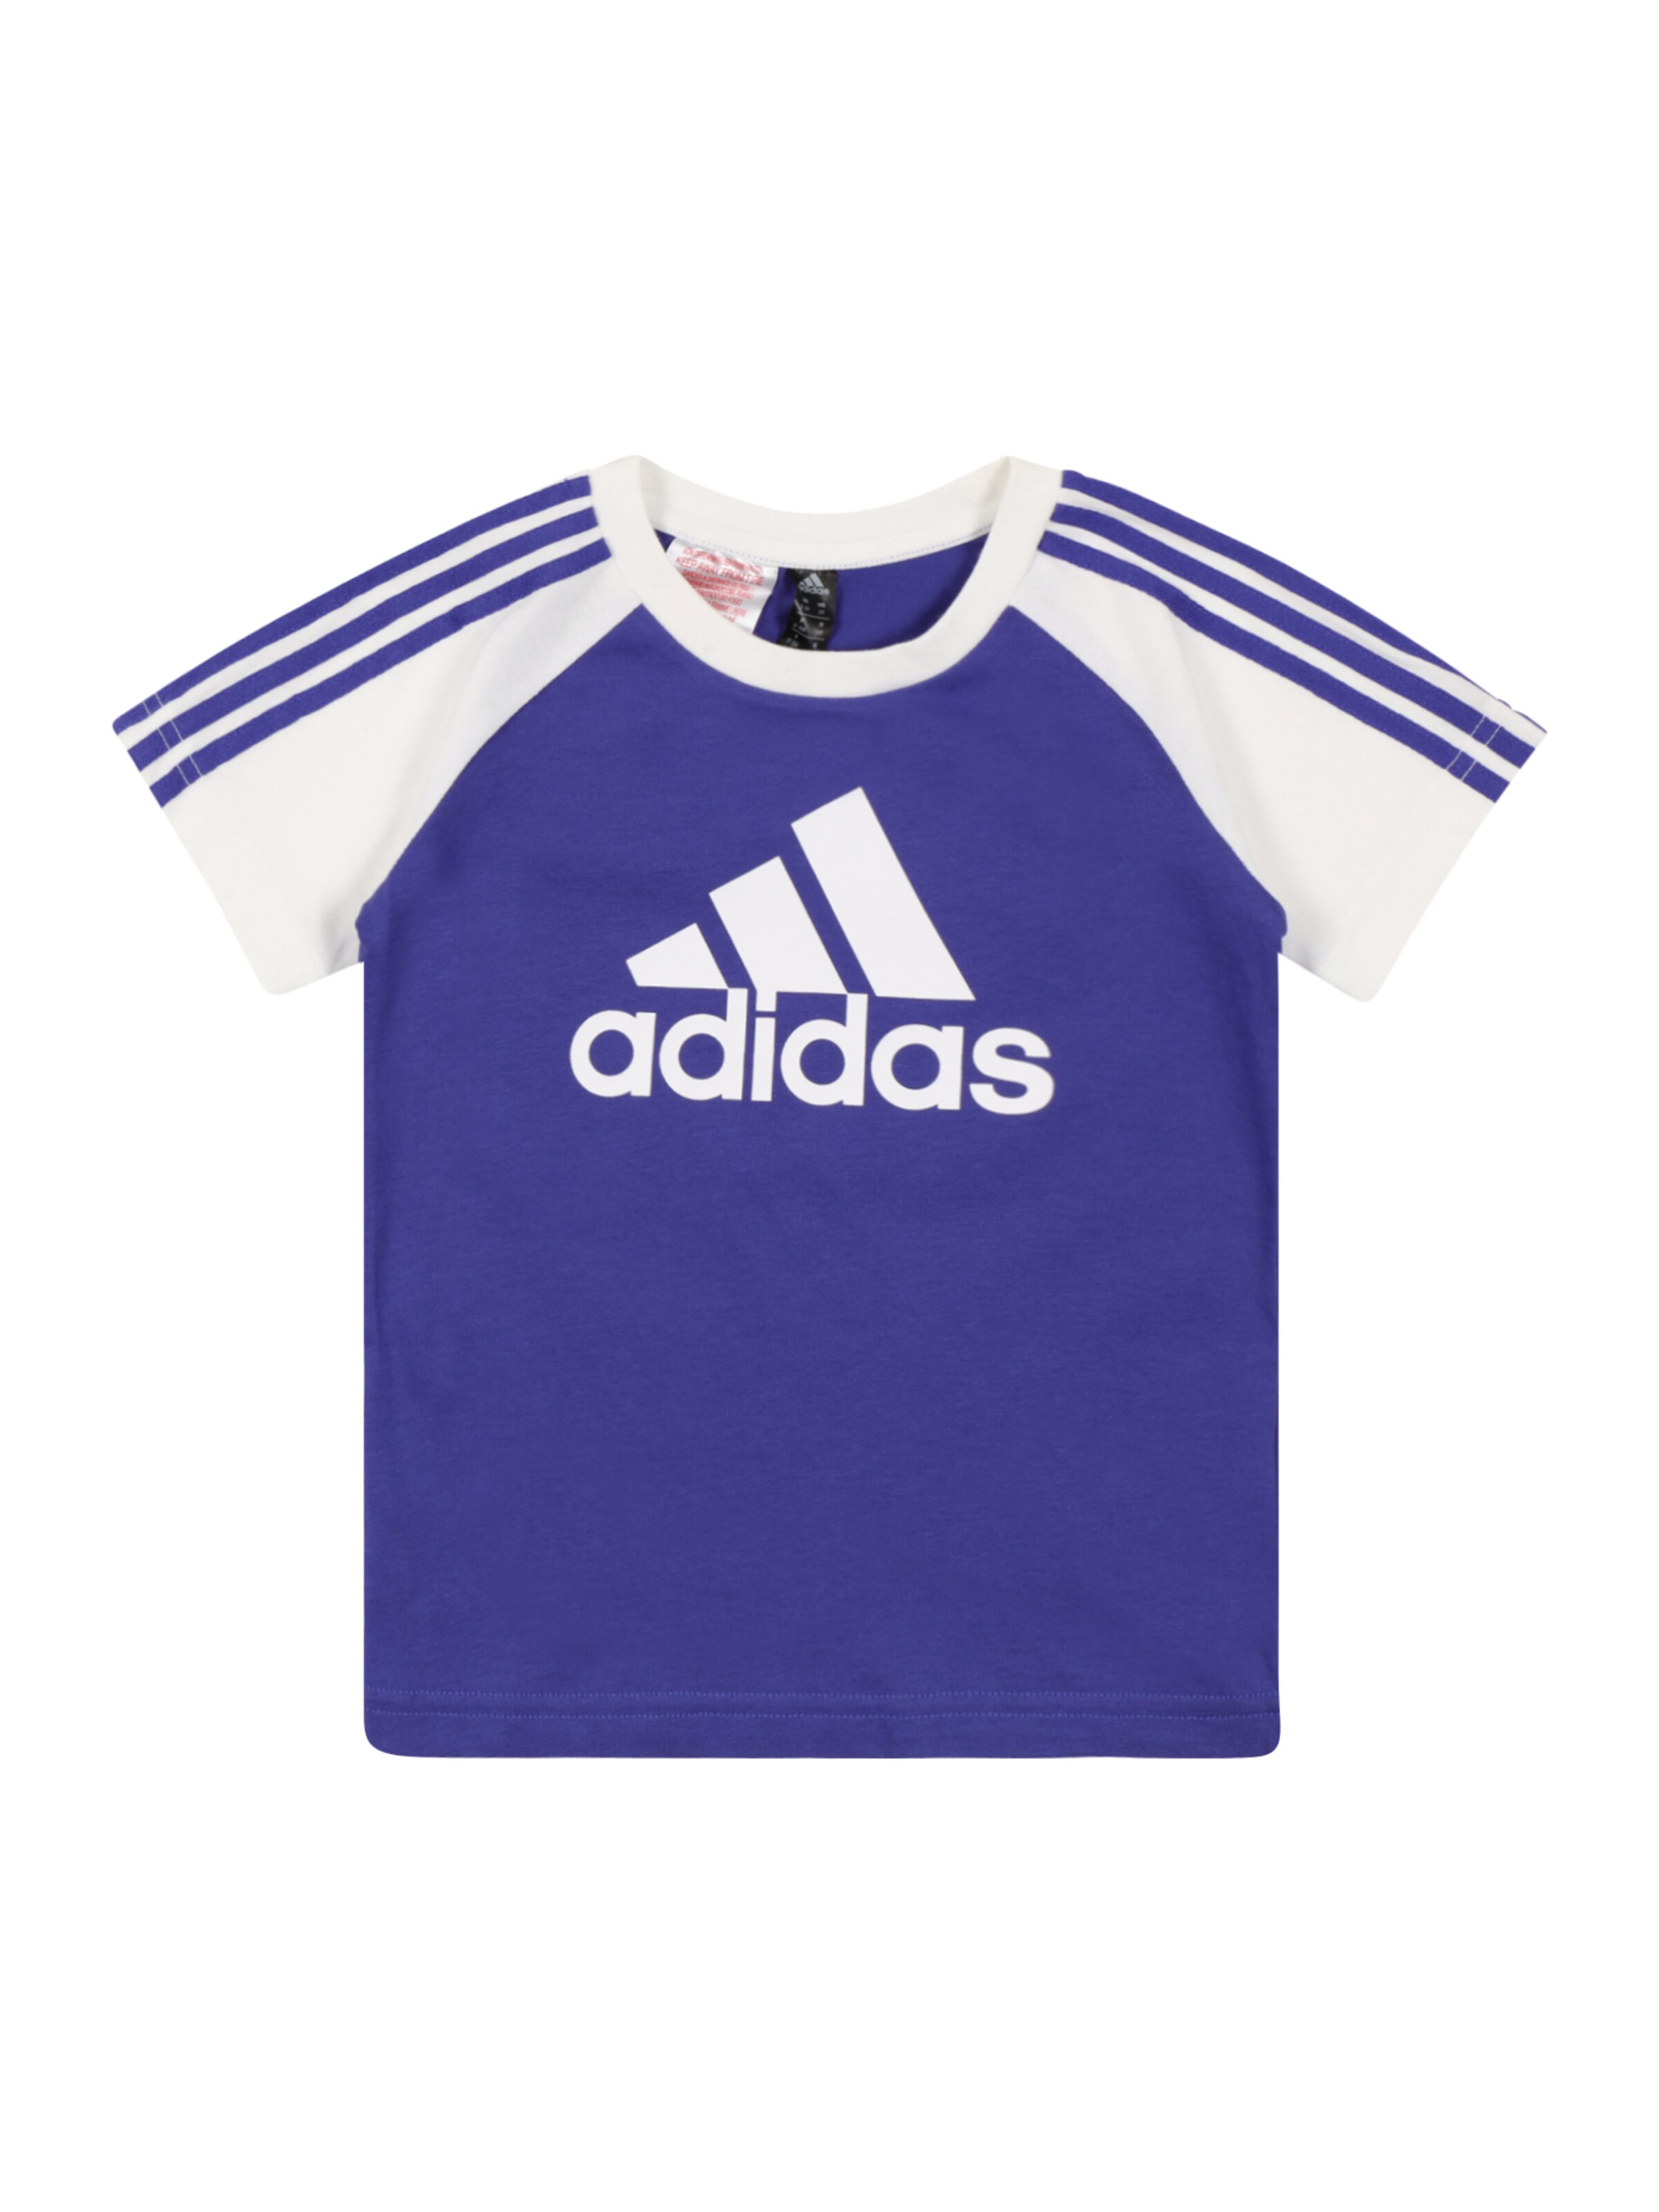 Adidas Shirt gr Kinder Mädchen Sportkleidung adidas Sportkleidung 34 wie neu 